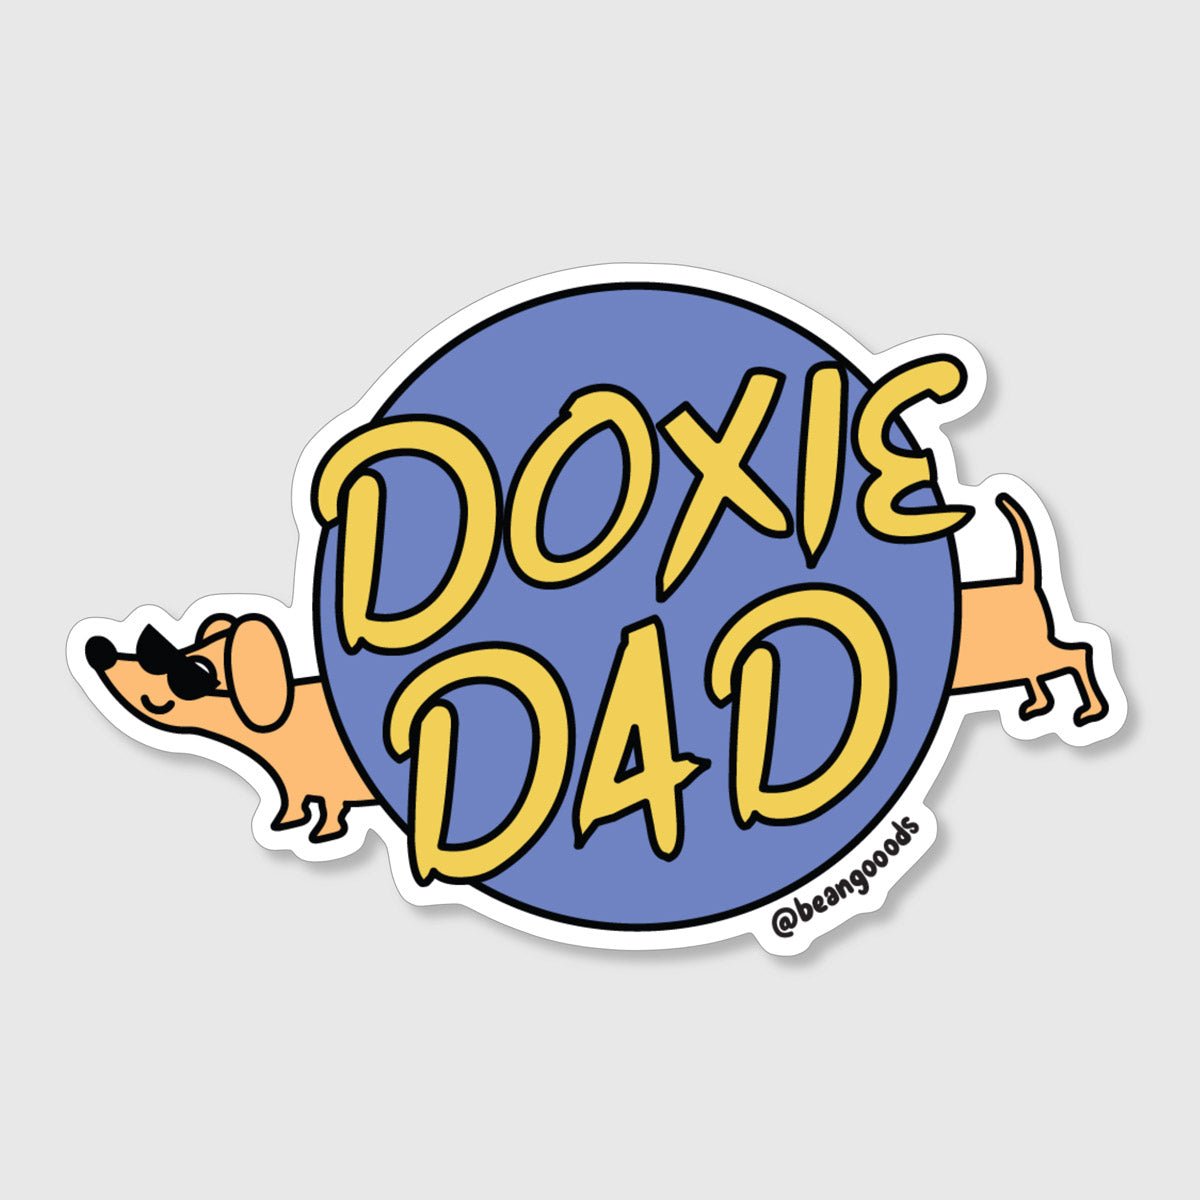 doxie dad sticker - bean goods